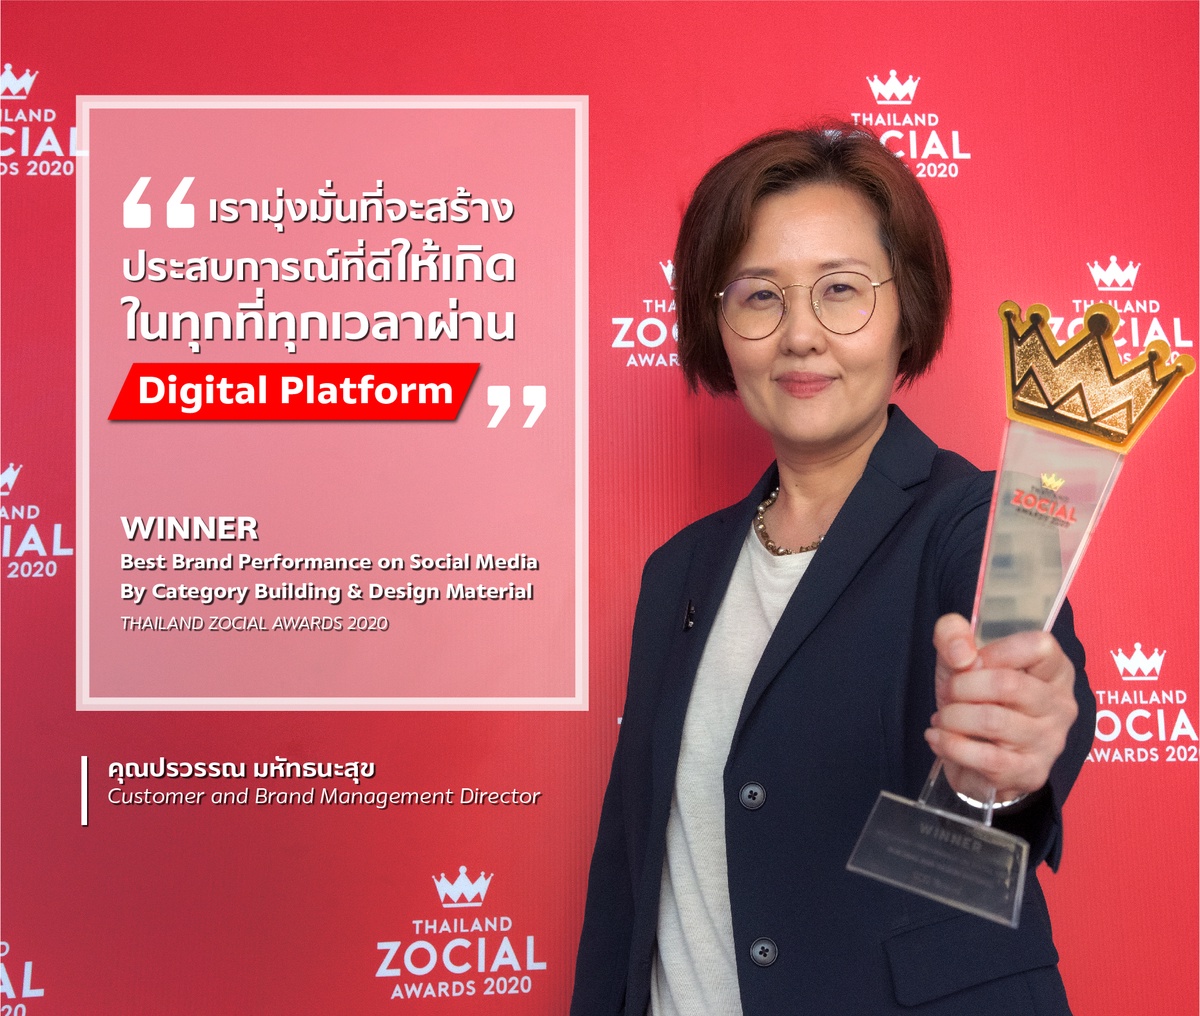 เอสซีจี คว้ารางวัลใหญ่ สร้างสรรค์ผลงานบนโซเชียลมีเดียยอดเยี่ยมที่สุด ในกลุ่มธุรกิจวัสดุก่อสร้าง จากเวที Thailand Zocial Awards 2020